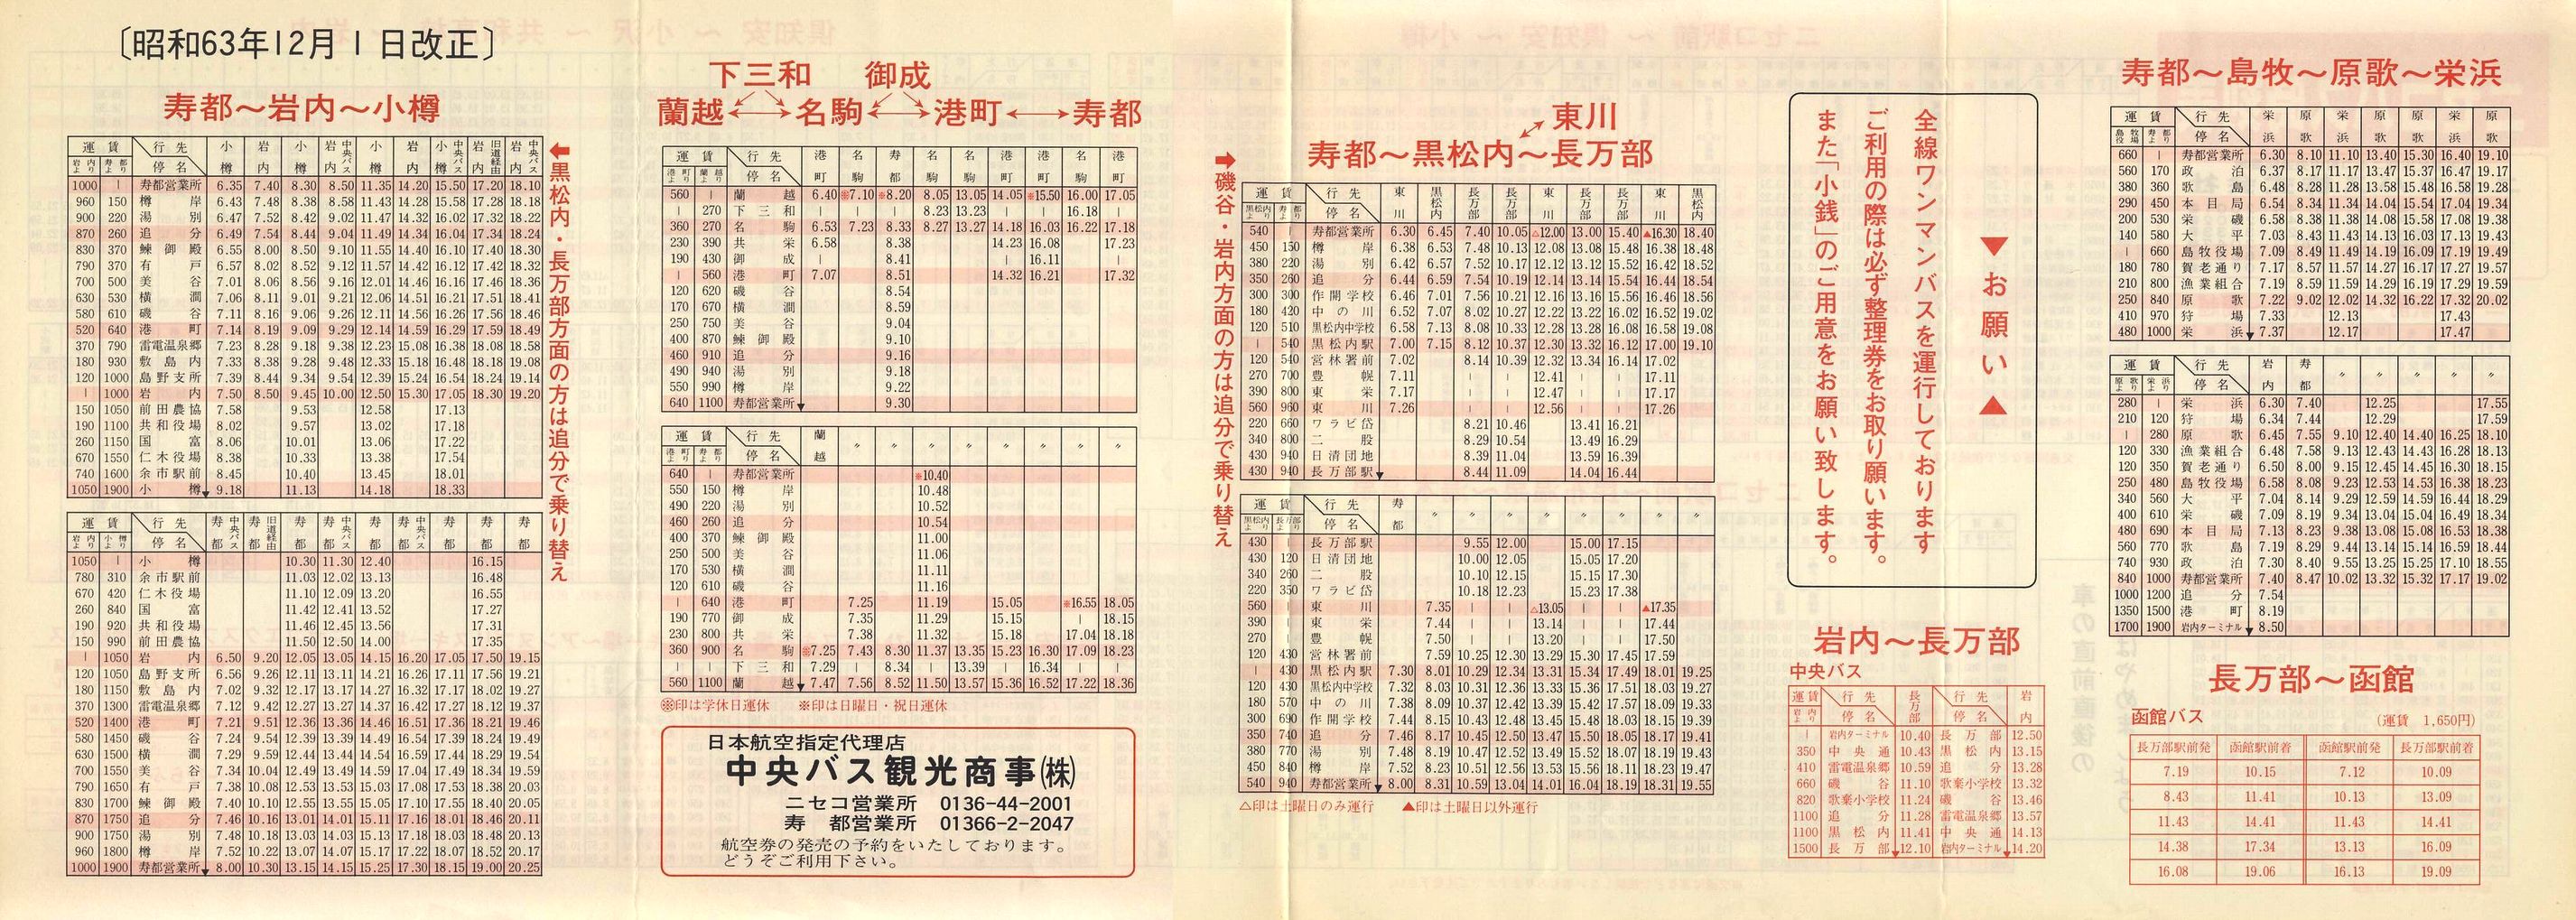 1988-12-01改正_ニセコバス_時刻表裏面